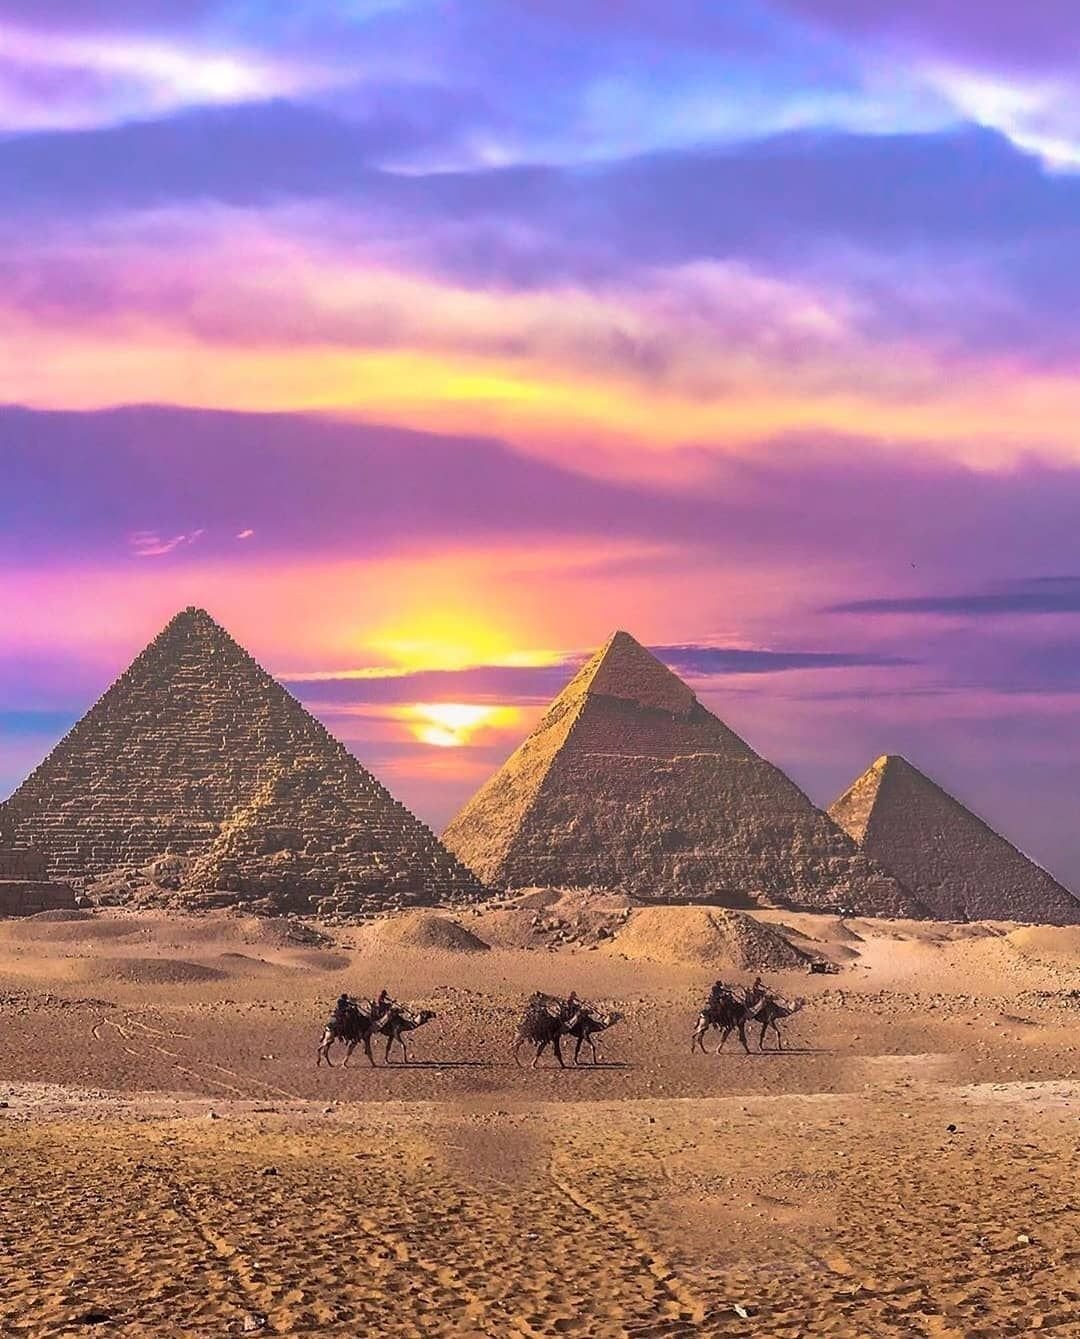 Пирамида хеопса видео. Пирамида Гиза Египет. Египет Хеопса пирамида рассвет. Каир древний Египет пирамиды. Пирамида Хеопса Эль-Гиза.